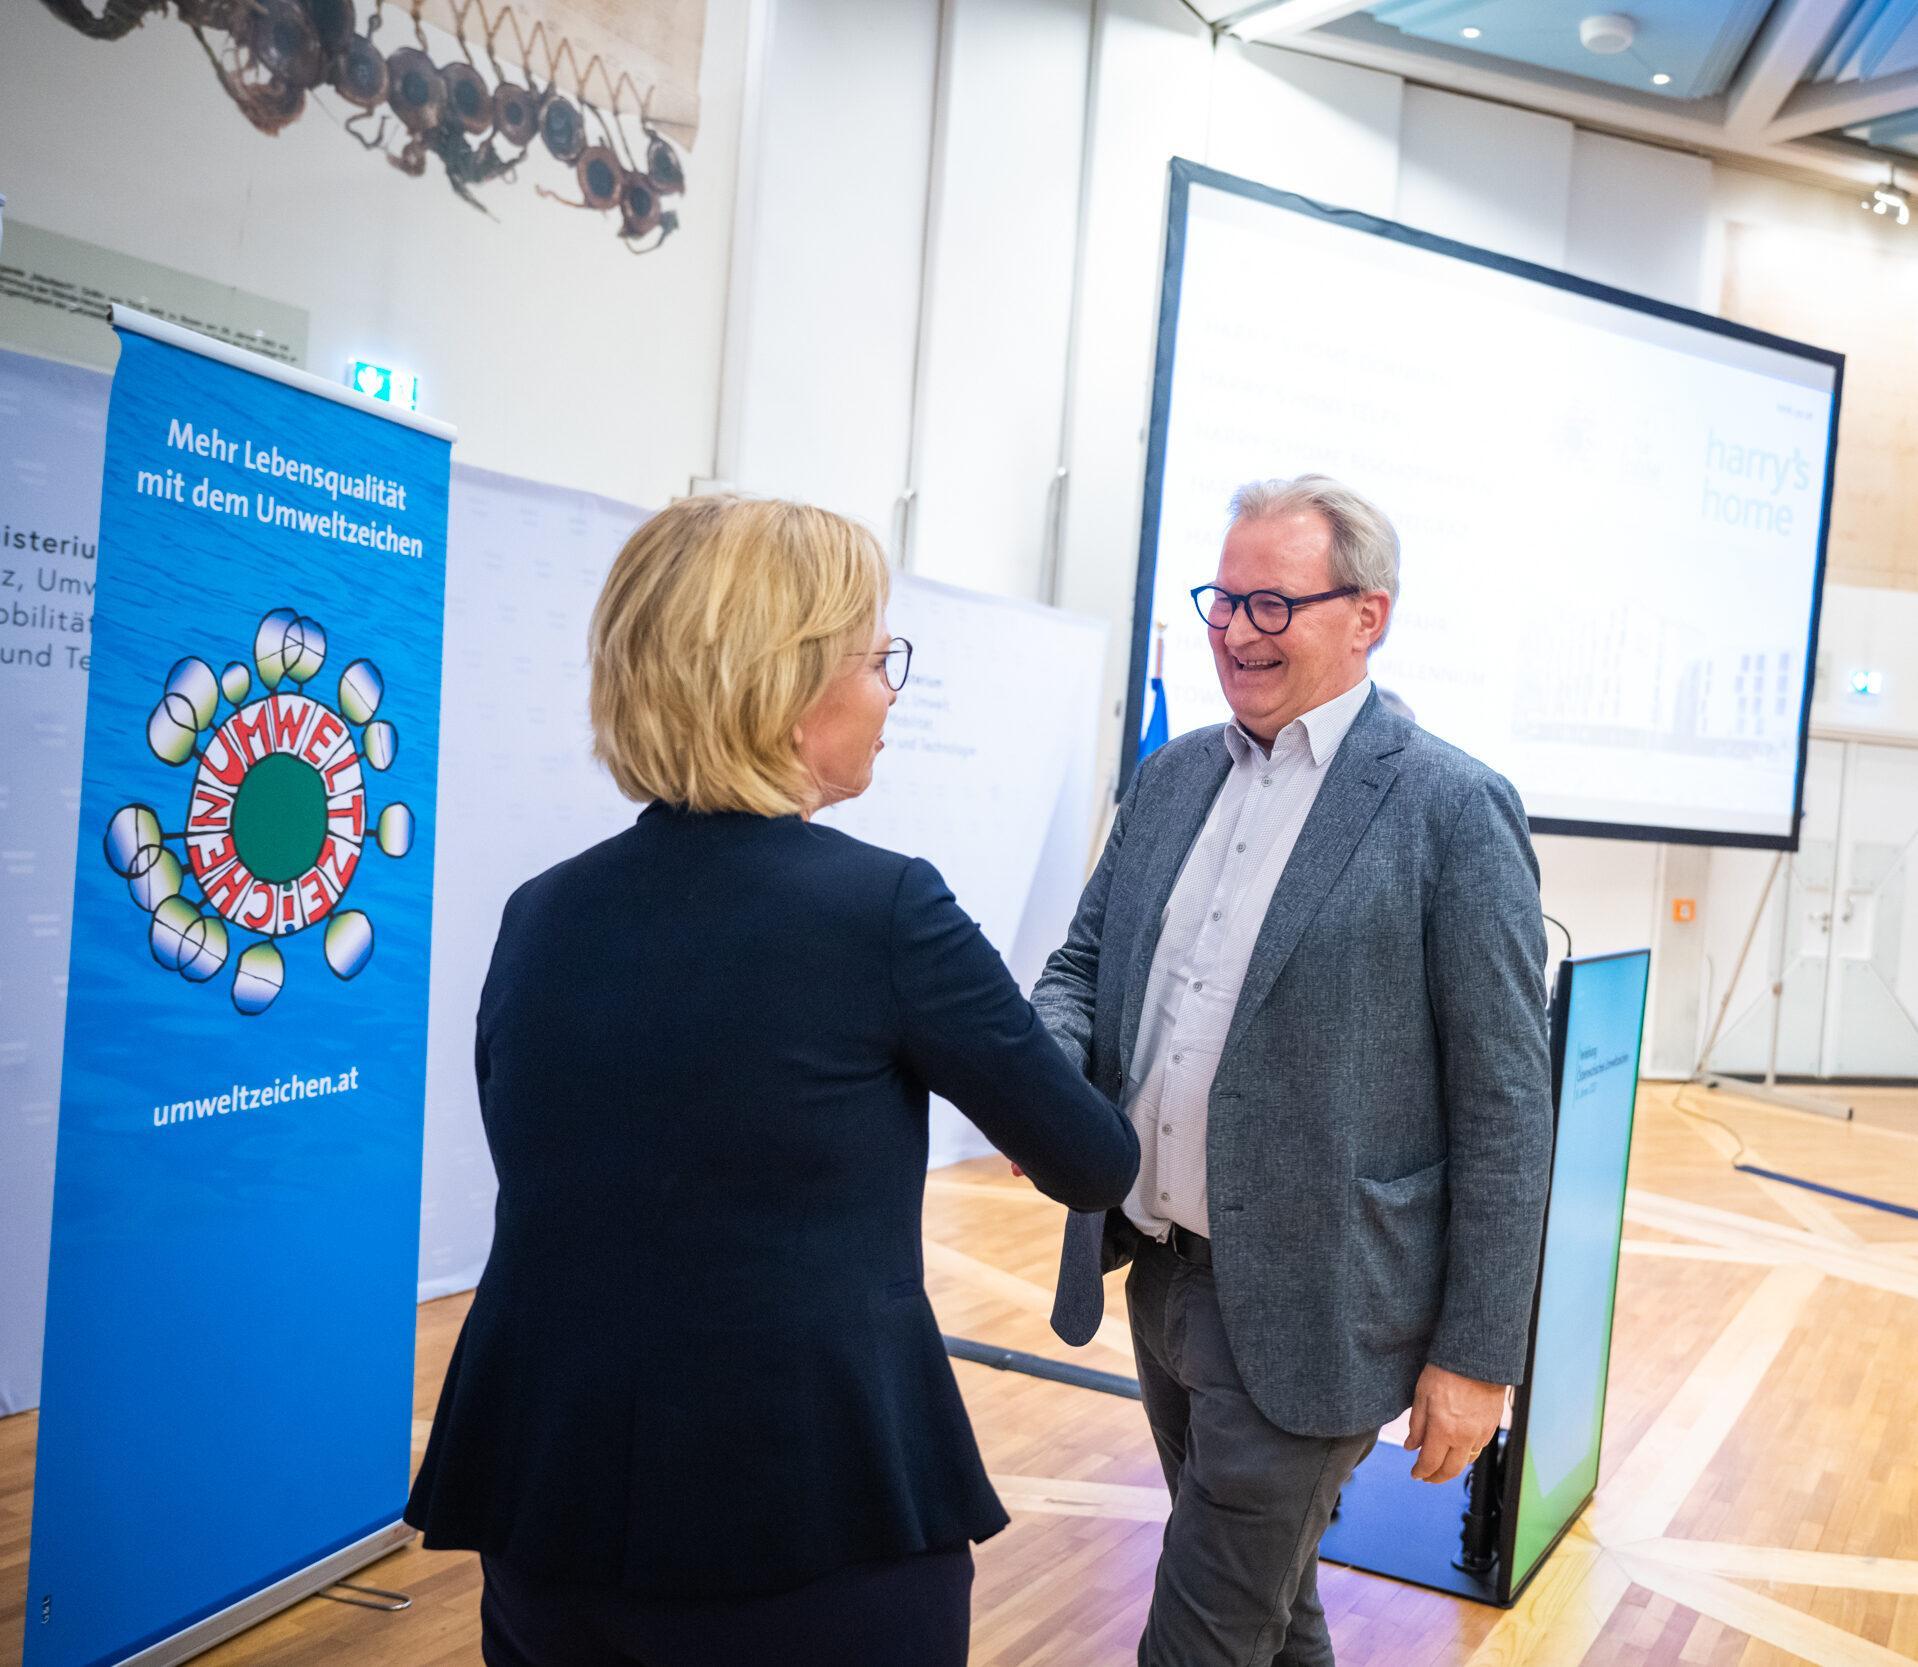 Leonore Gewessler schüttelt Gründer Harald Ultsch bei einer Veranstaltung lächelnd die Hand